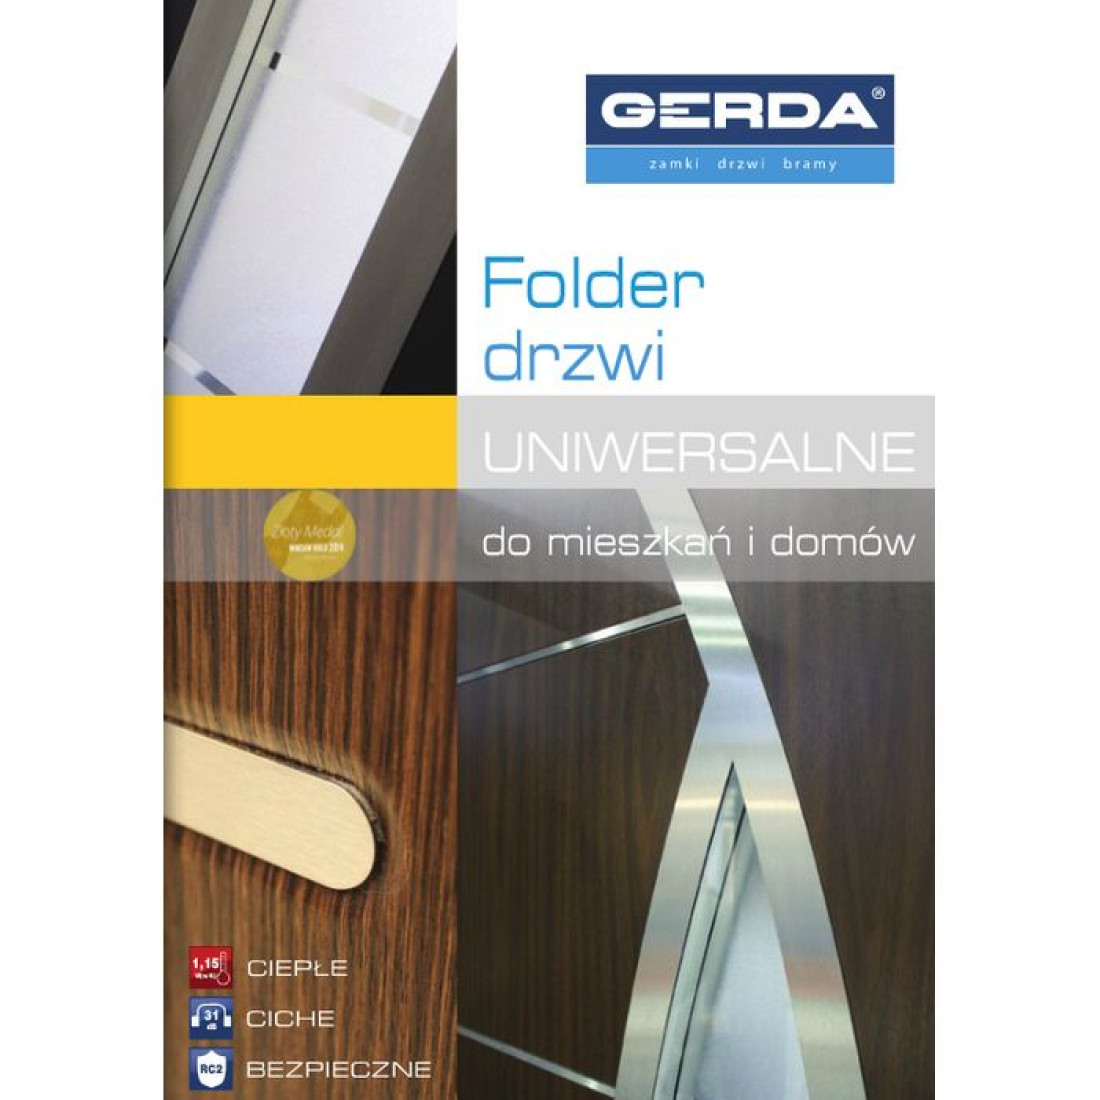 GERDA przedstawia folder drzwi uniwersalnych do mieszkań i domów